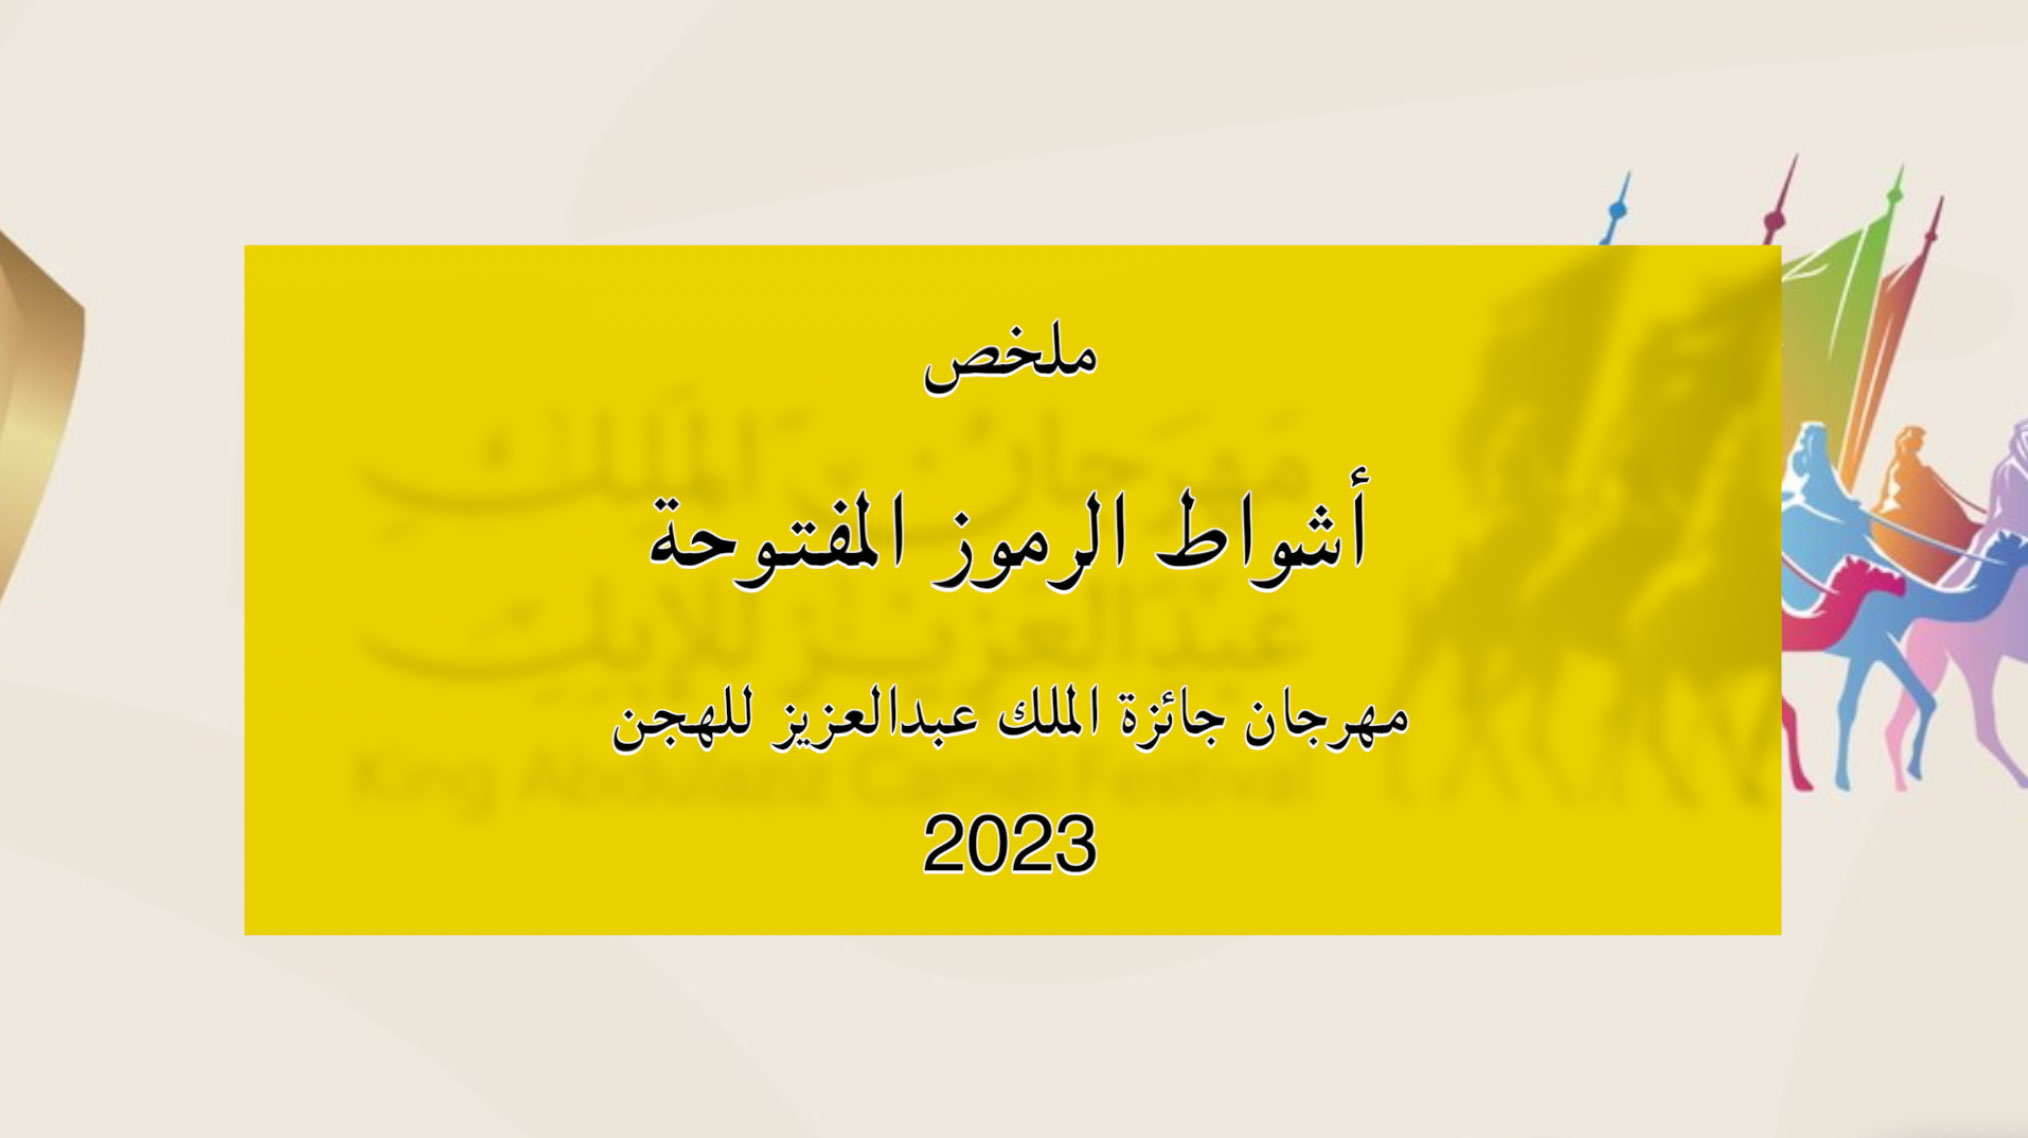 ملخص أشواط الرموز المفتوحة بمهرجان جائزة الملك عبدالعزيز للهجن 2023